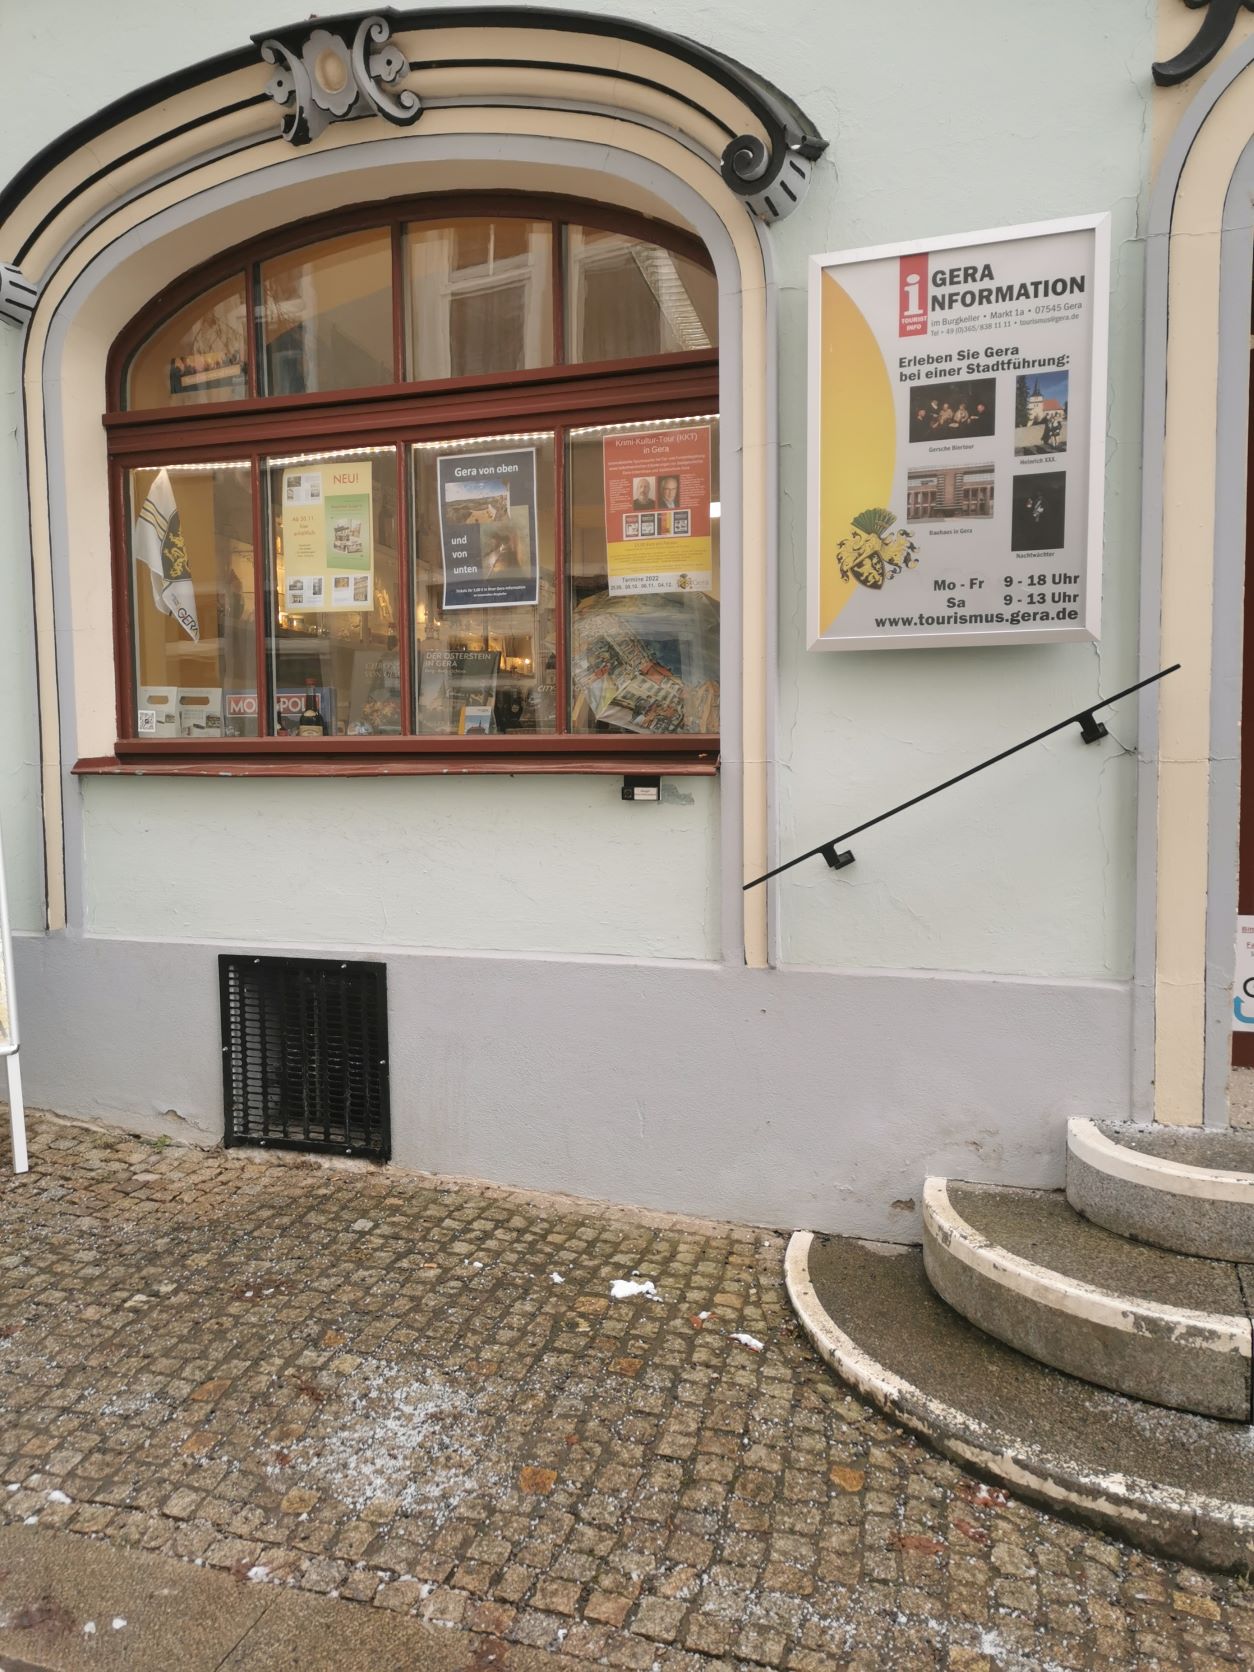 Bild 1 Tourist Information in Gera